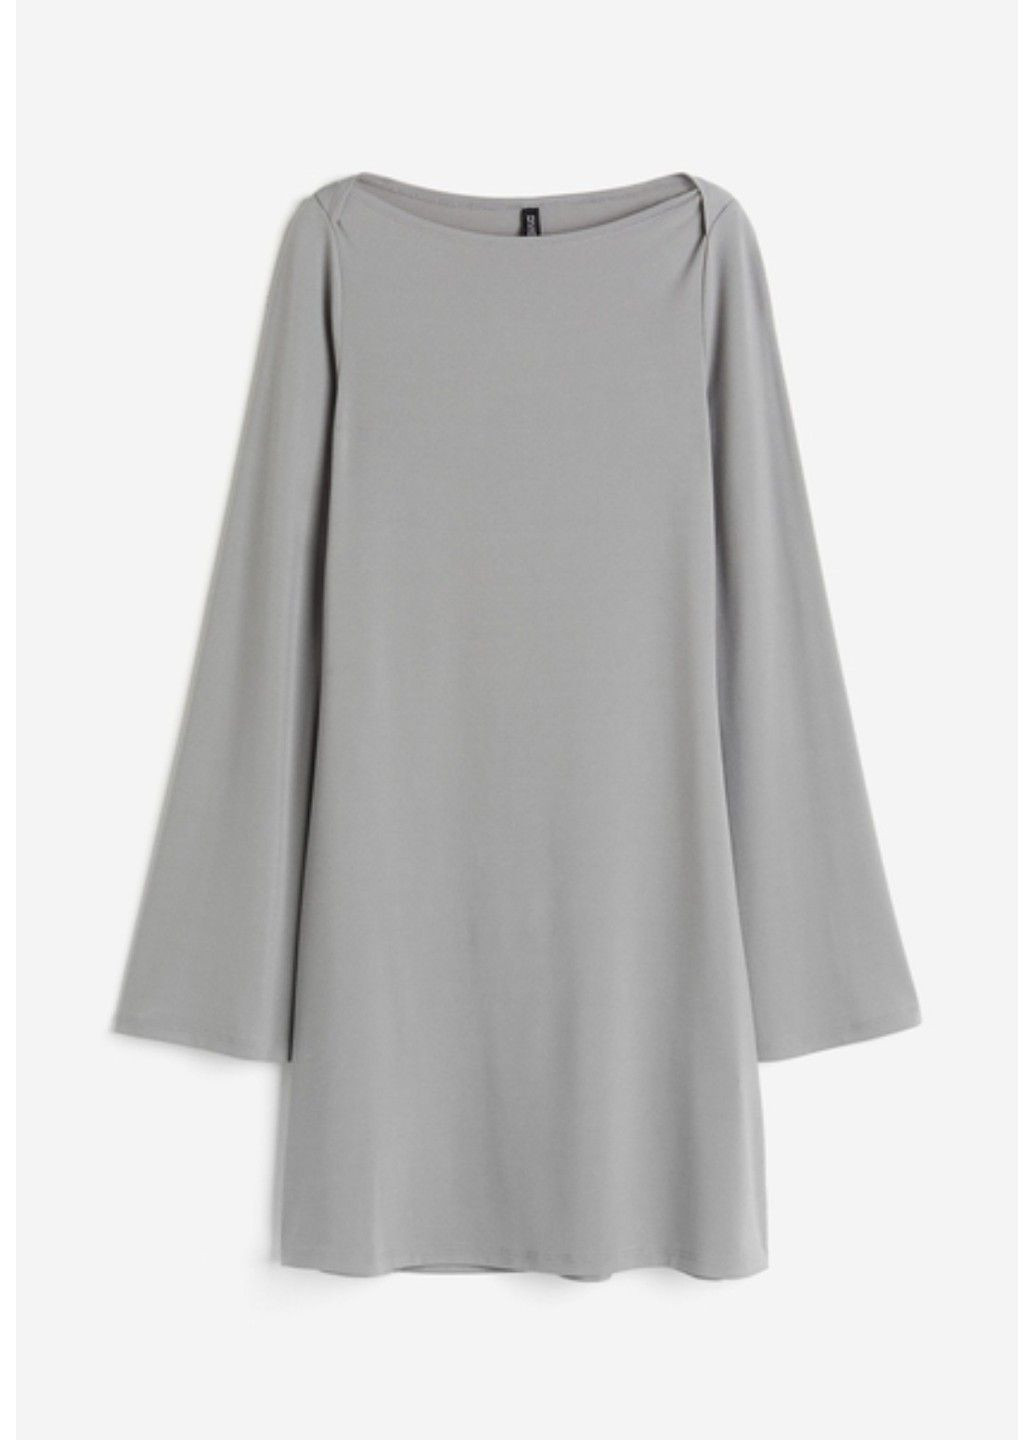 Светло-серое коктейльное женское трикотажное платье с длинными рукавами н&м (57141) xs светло-серое H&M